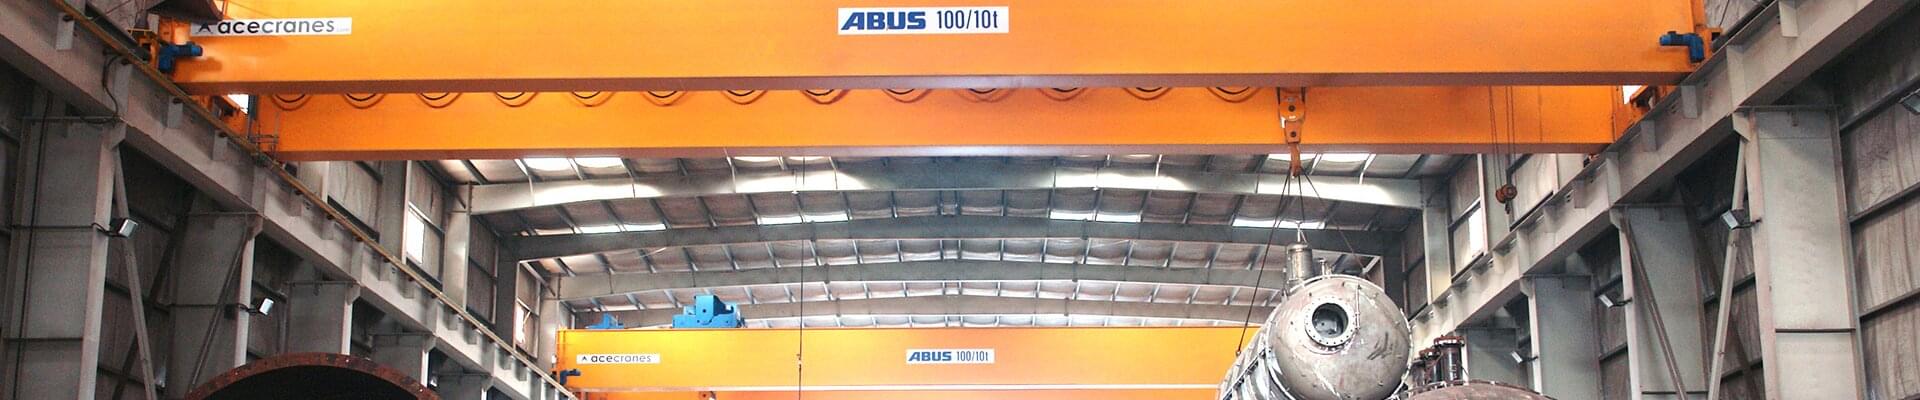 ABUS dubbelliggerloopkraan met een draagvermogen van 100 ton in een productiefaciliteit van DESCON Engineering HFZC in de Verenigde Arabische Emiraten.